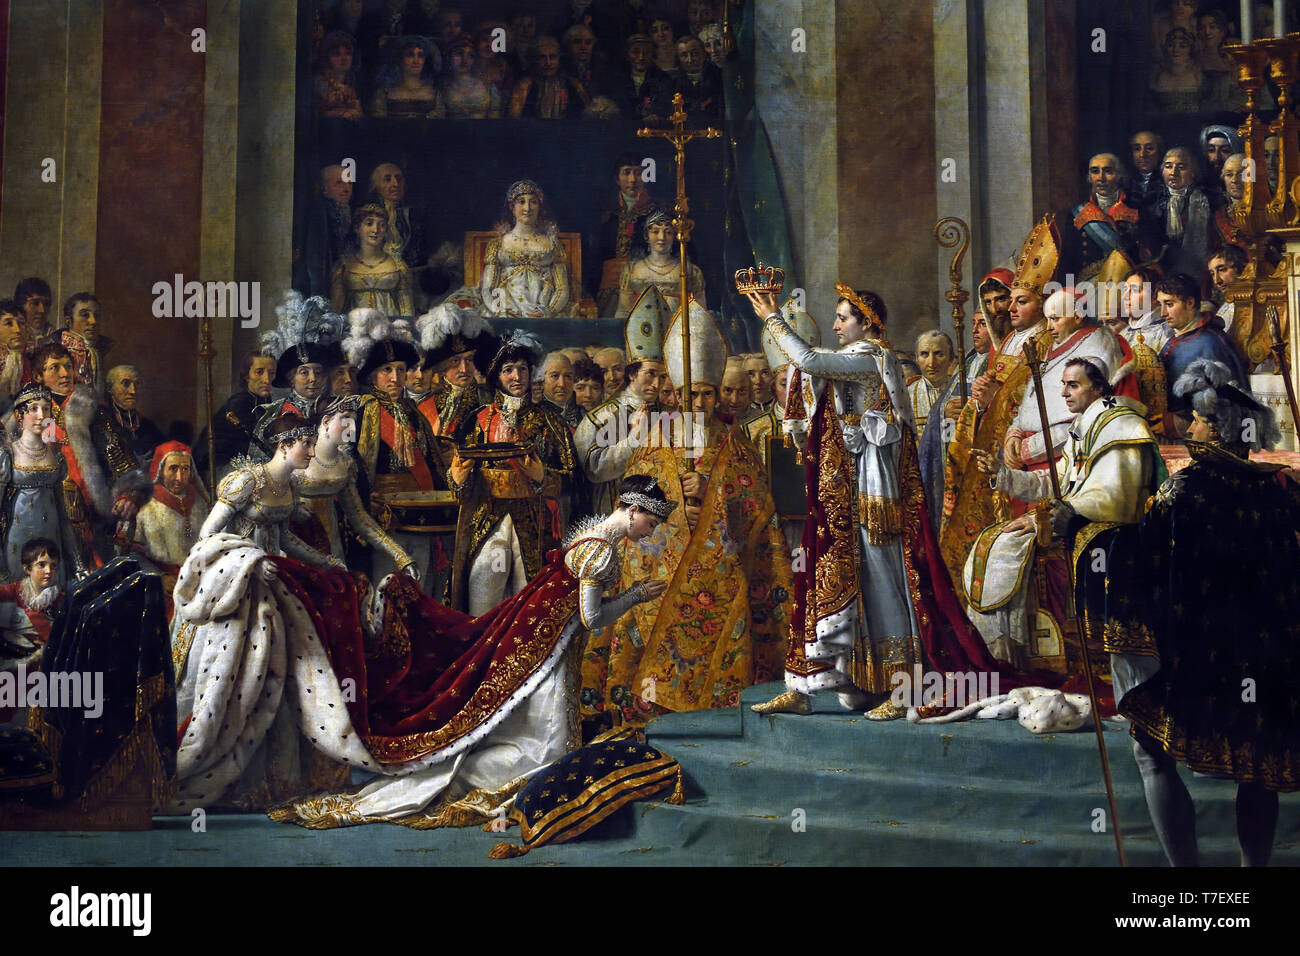 Die Krönung - Weihe von Kaiser Napoleon Bonaparte und Josephine 1807 Kathedrale Notre Dame, Paris Jacques-Louis David 1748 - 1825 Frankreich Französisch Stockfoto